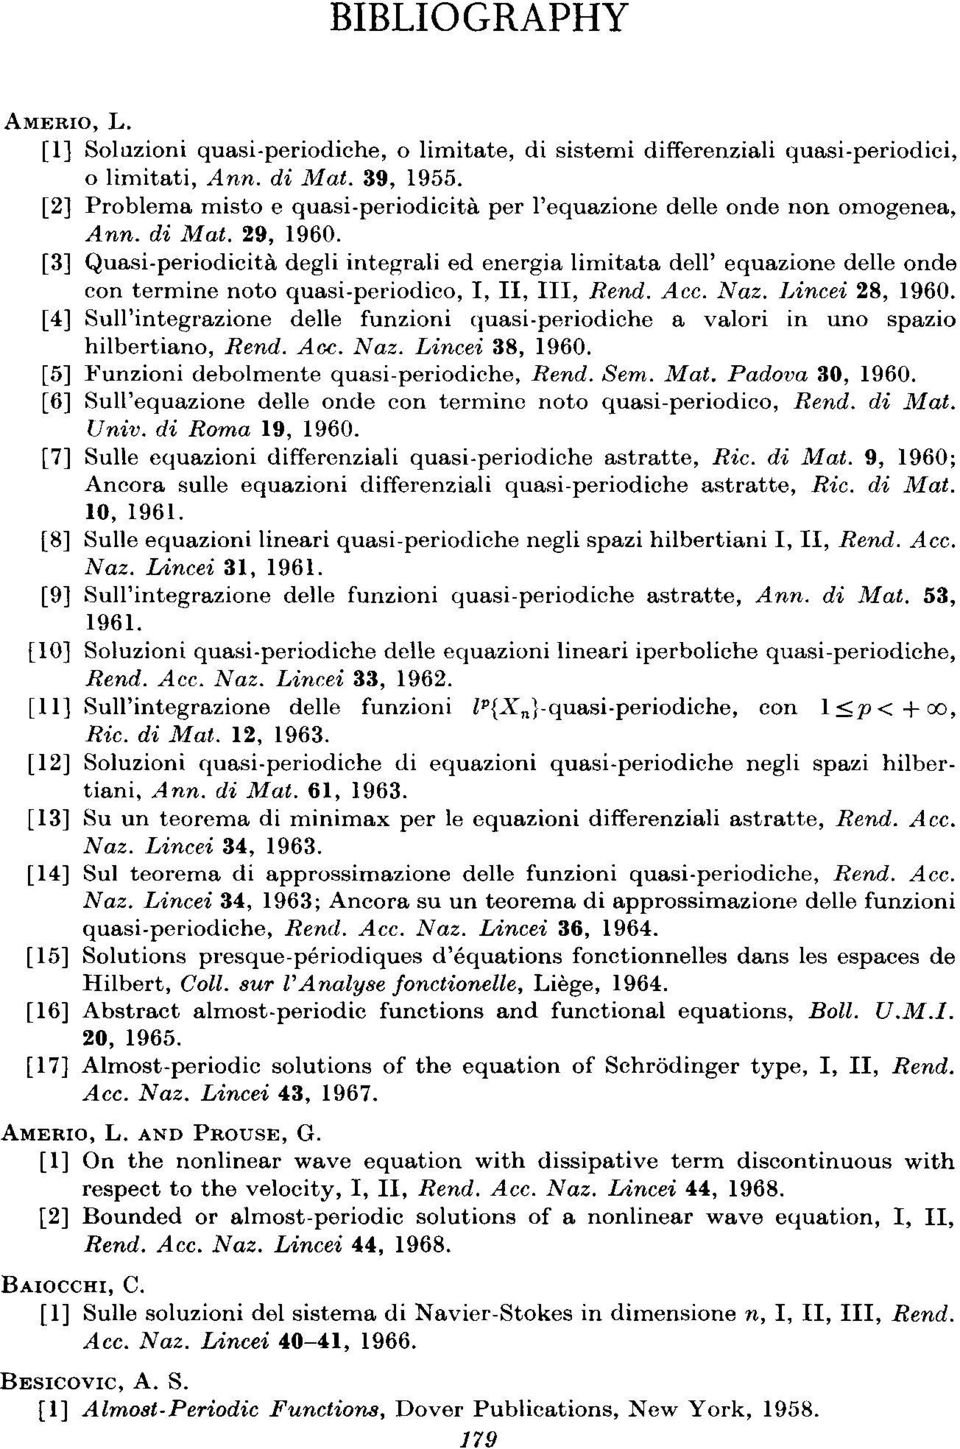 periodicita degli integrali ed energia limitata dell' equazione delle onde con termine noto quasi pcriodico, I, II, III, Rend. Acc. Naz. Lincei 28, 1960.